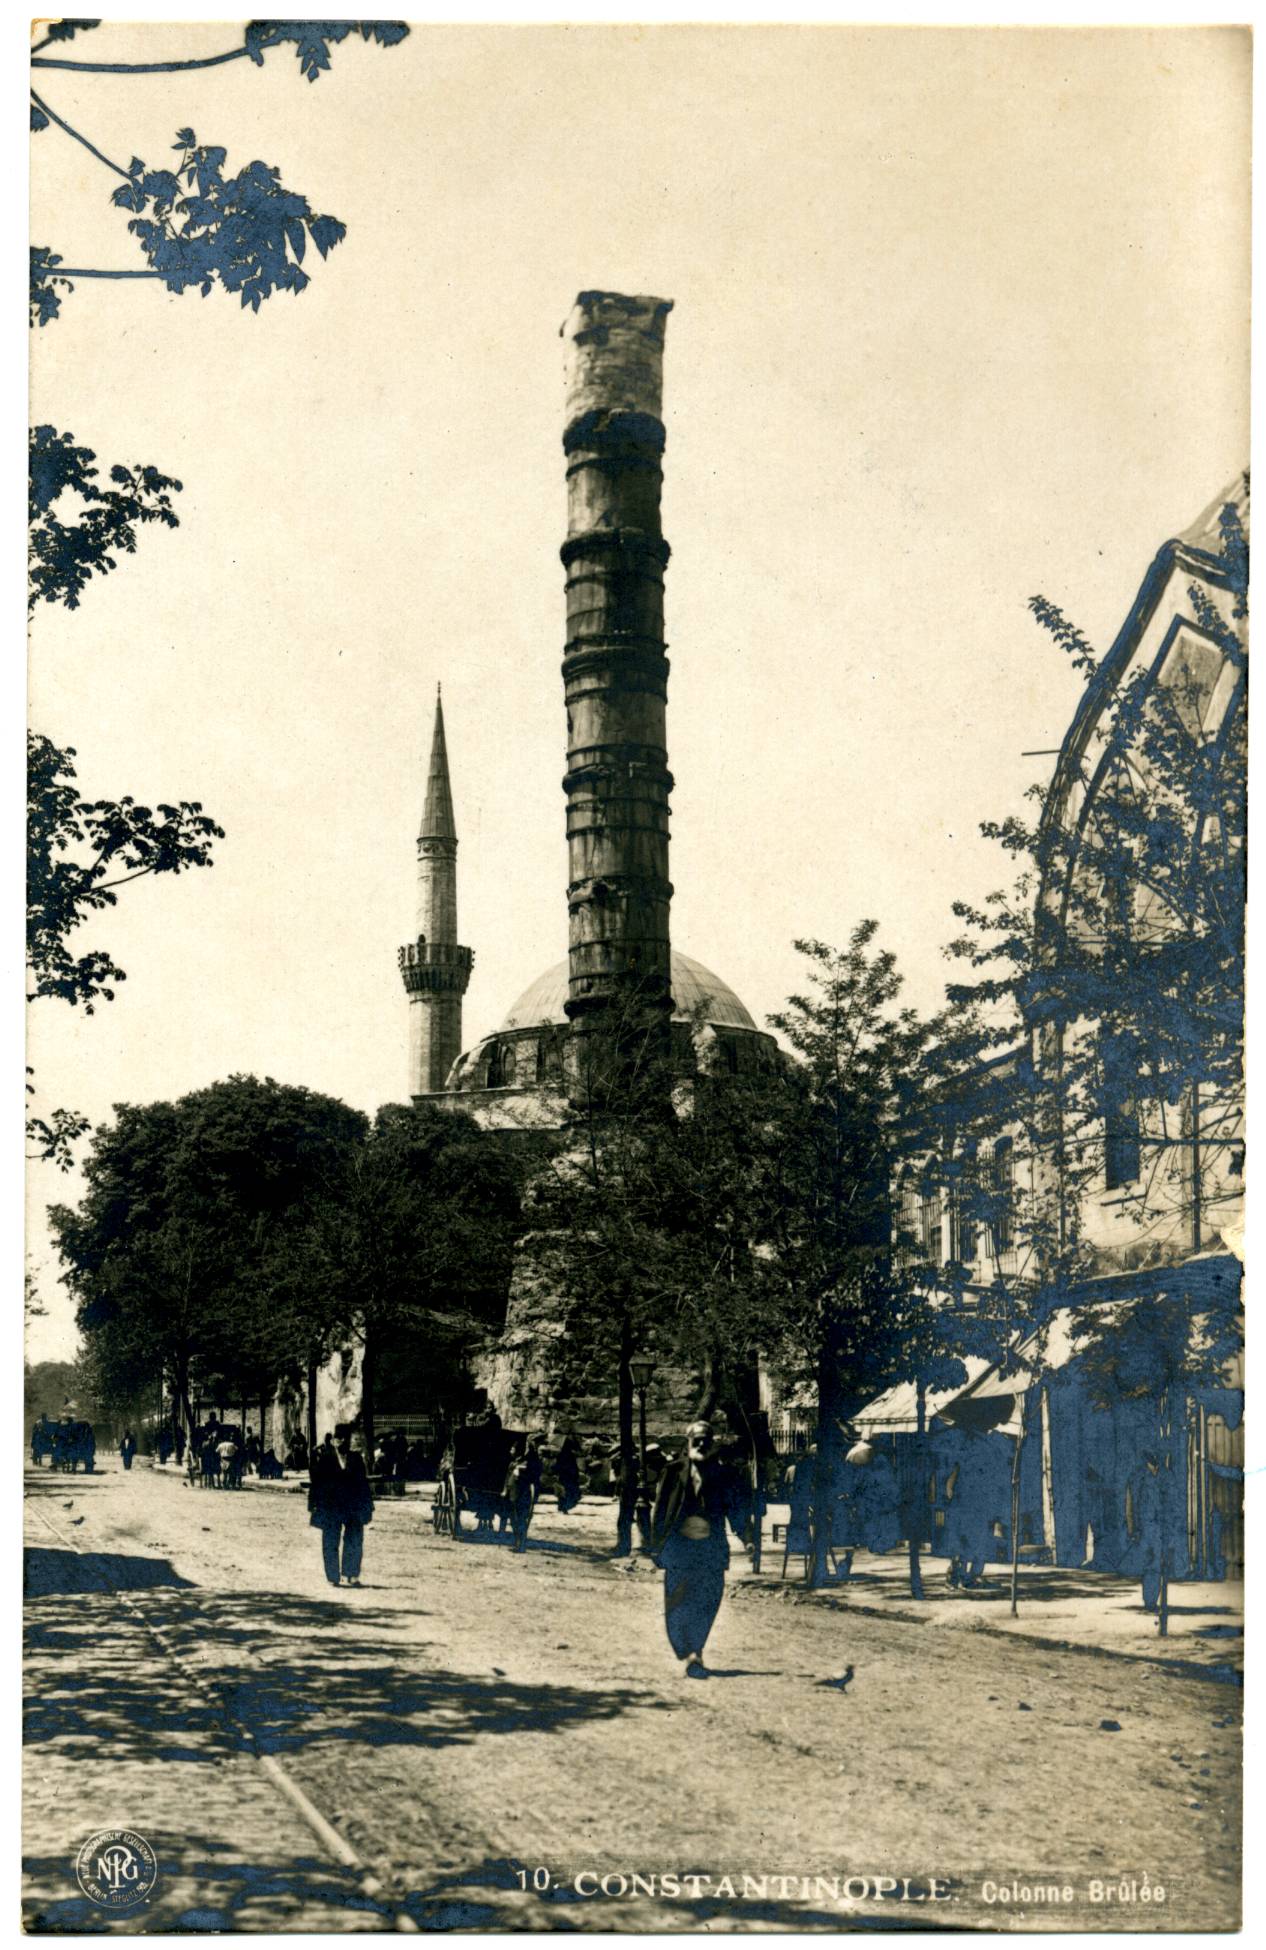 Çemberlitaş Column